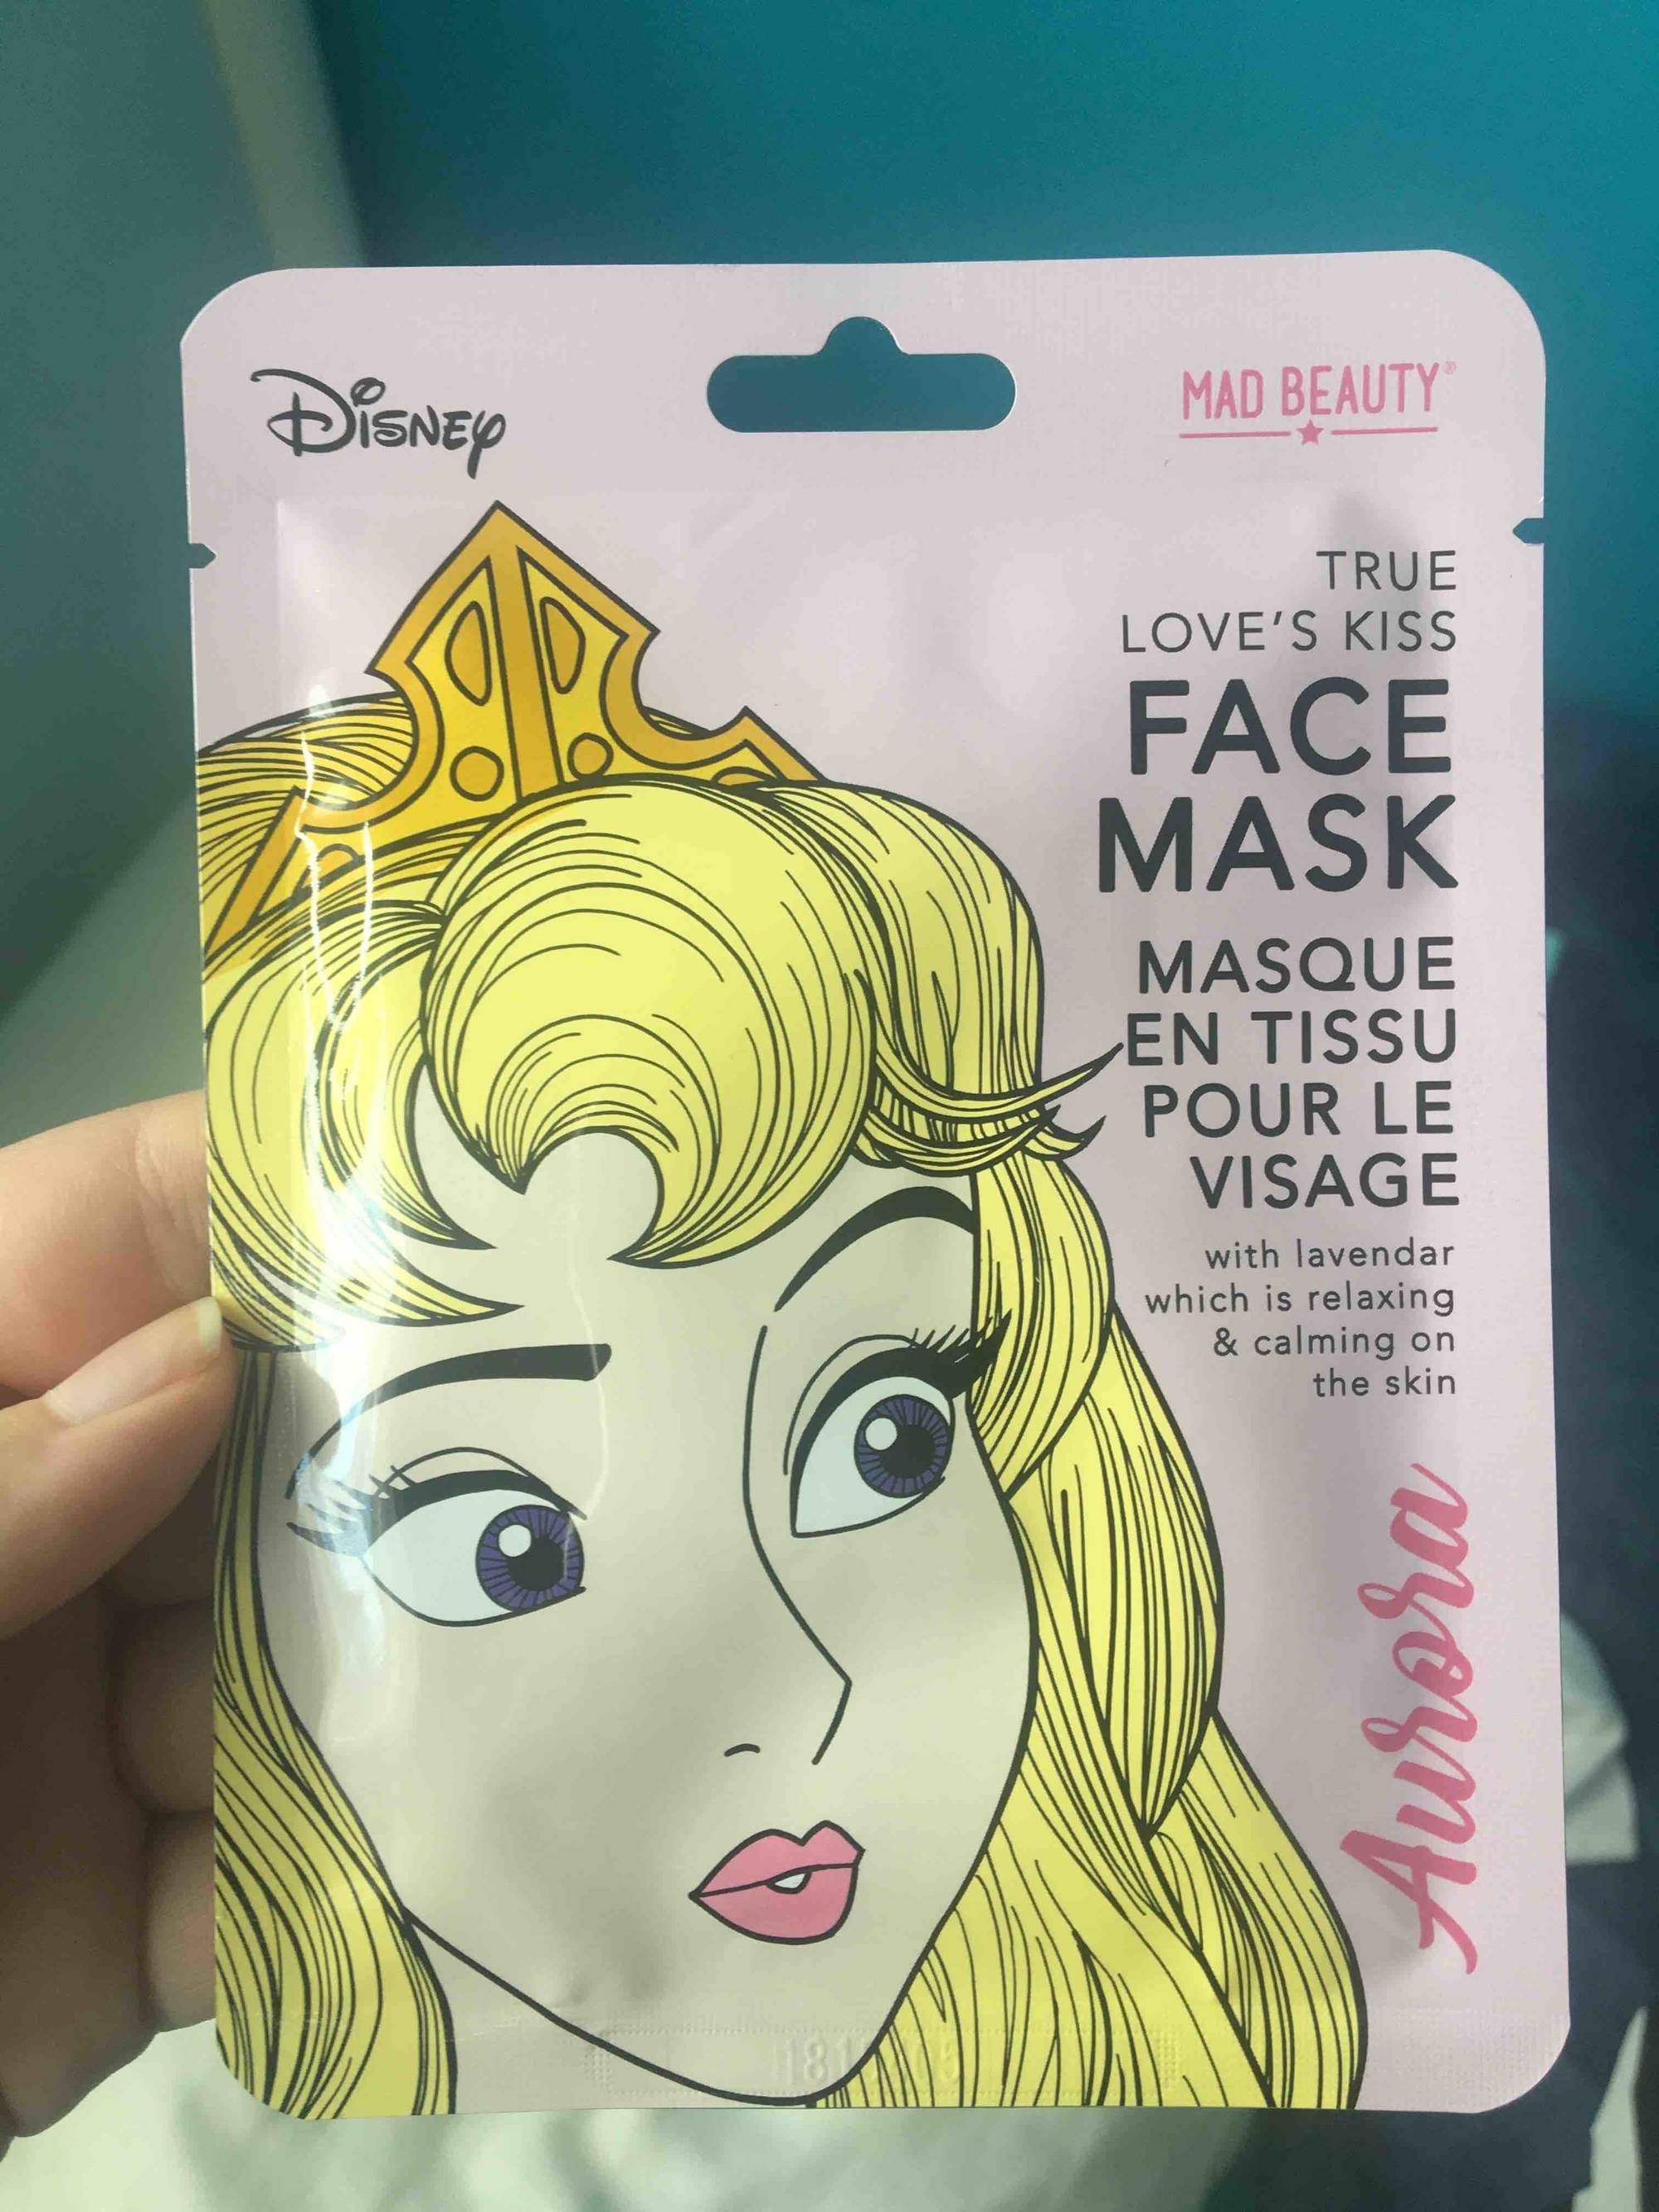 DISNEY - Mad Beauty - Masque en tissu pour le visage